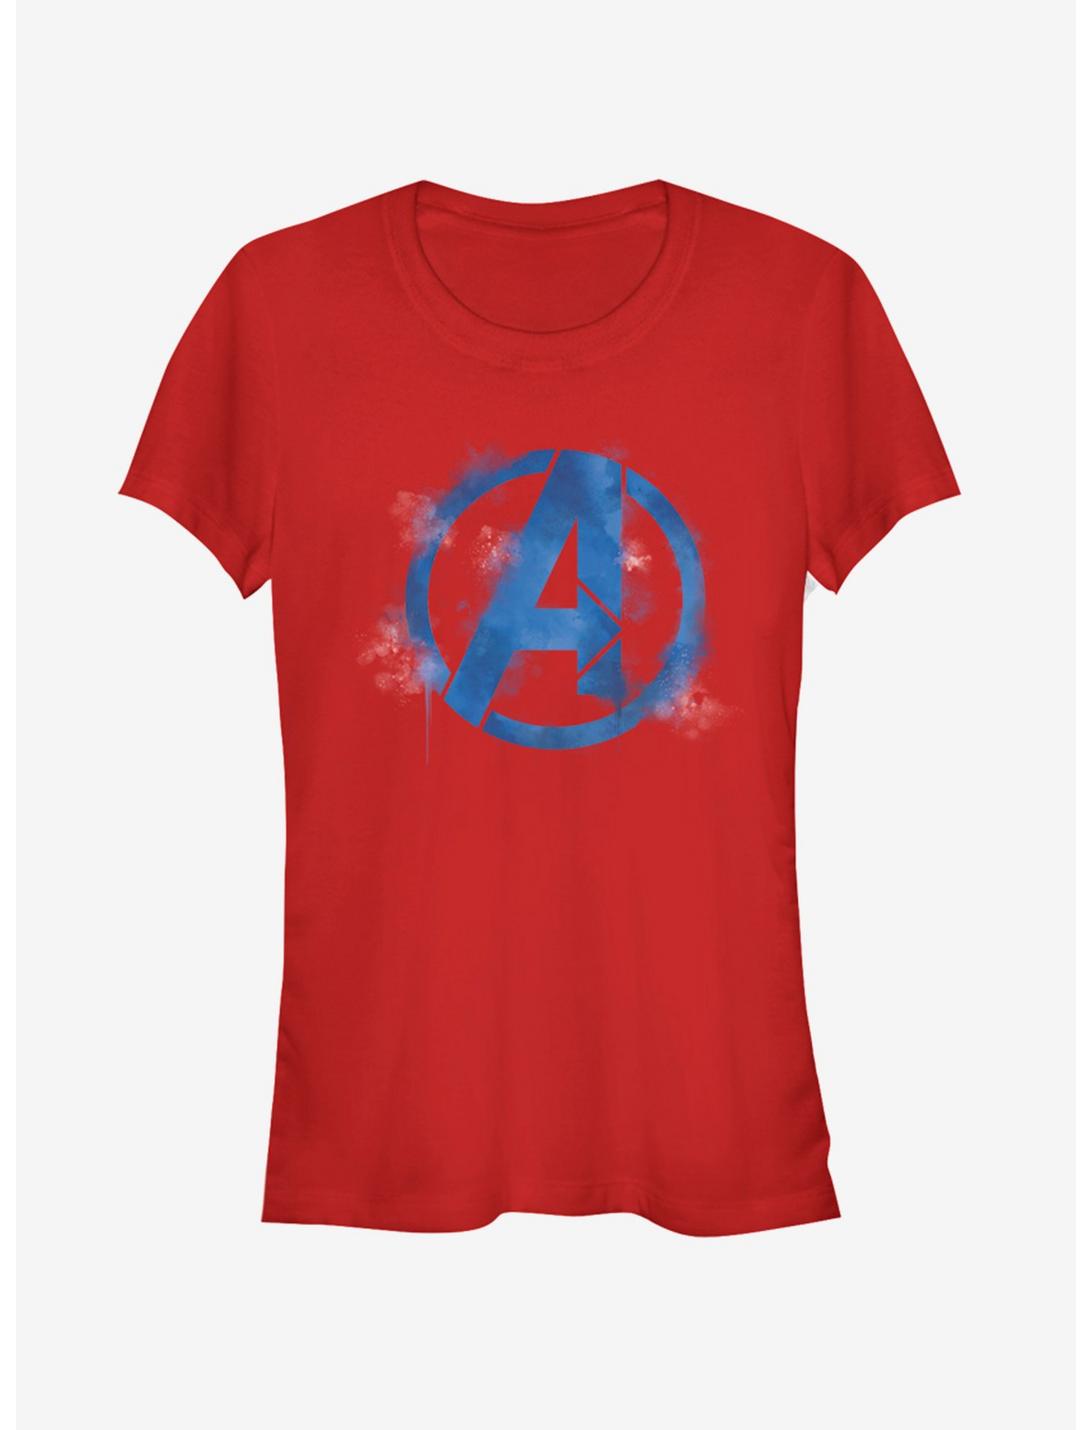 Marvel Avengers: Endgame Avengers Spray Logo Girls Red T-Shirt, , hi-res